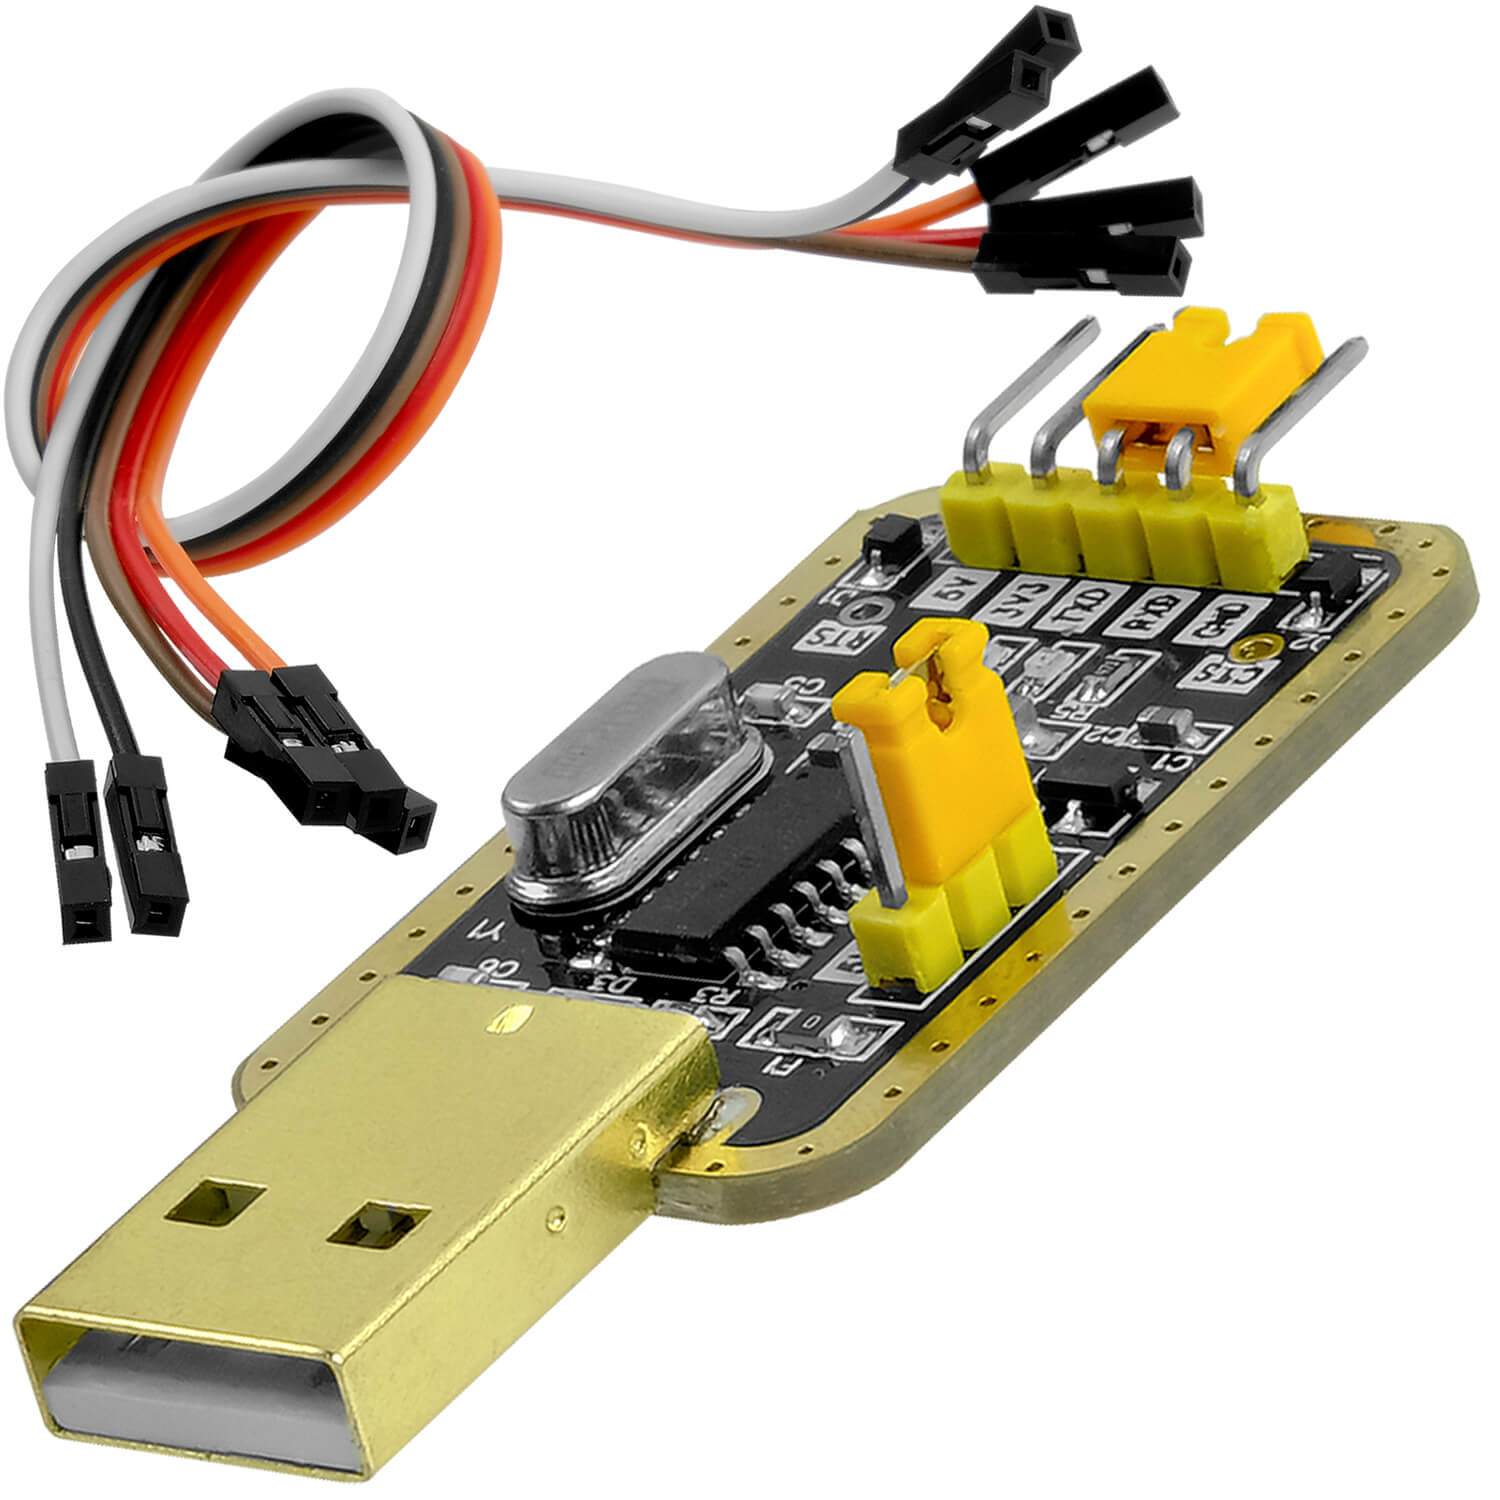 CH340 3.3v-5v TTL USB Serial Port Adapter - CH340USB